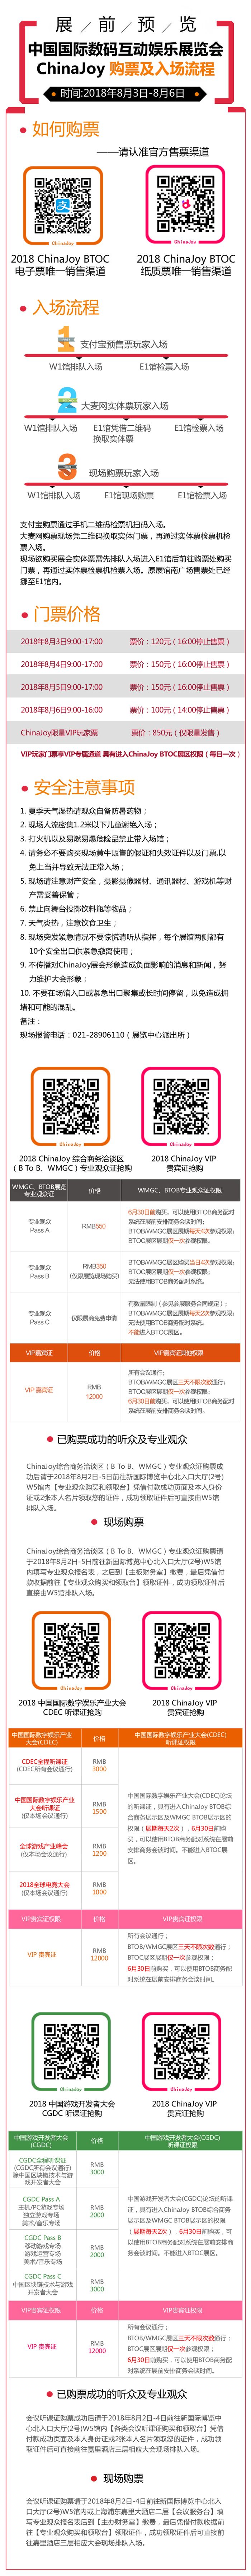 2018年第十六届ChinaJoy展前预览（综合信息篇）正式发布！